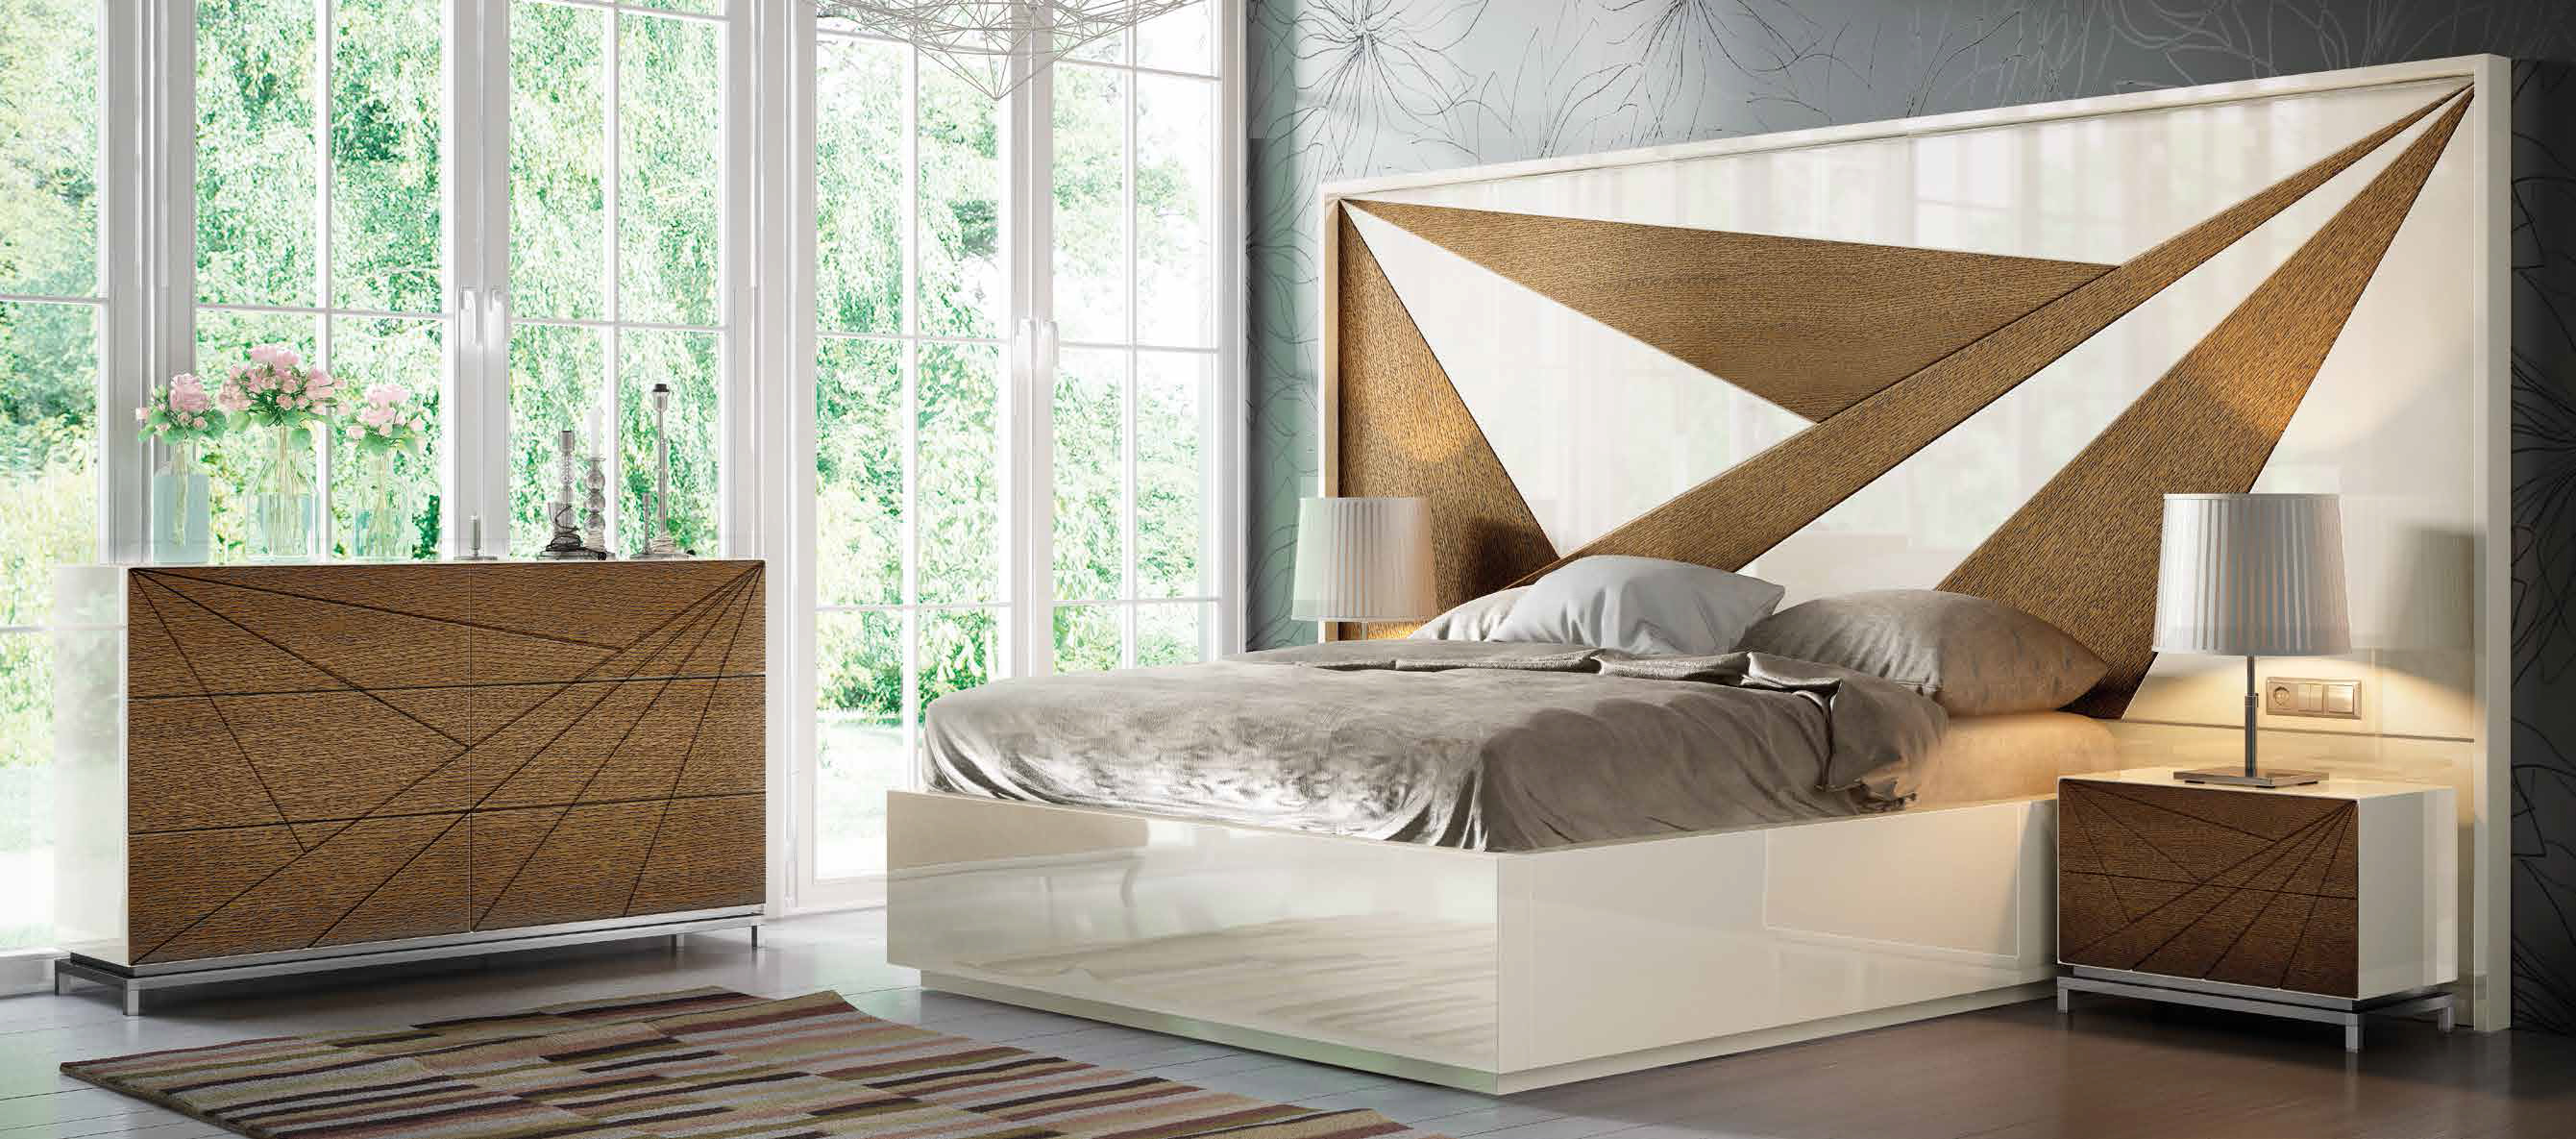 Brands Franco Furniture Avanty Bedrooms, Spain DOR 19